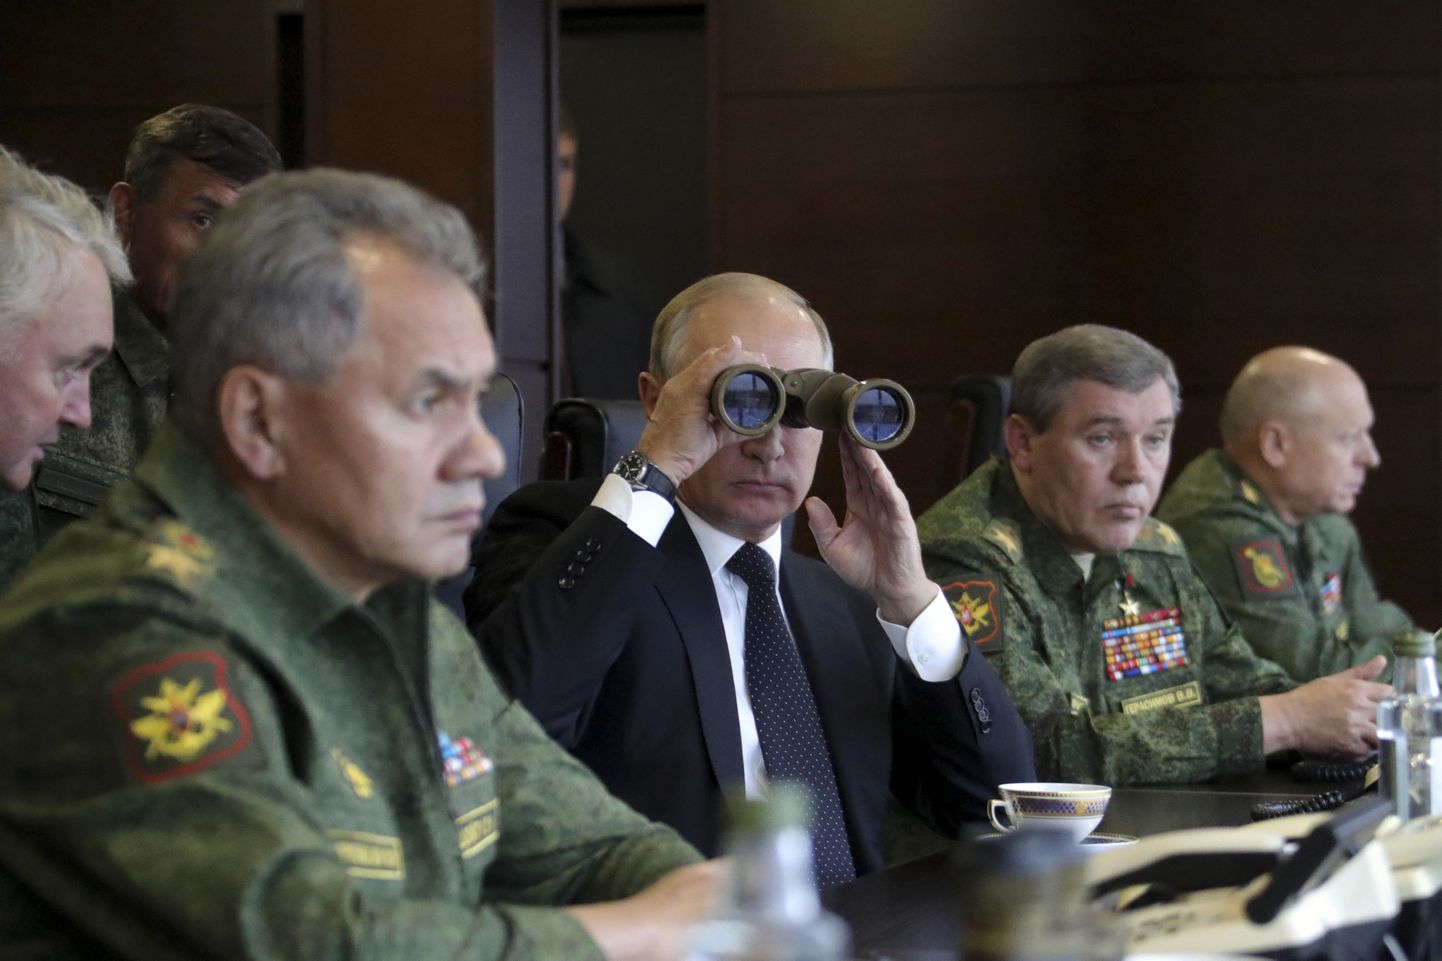 Venemaa president Vladimir Putin jälgimas koos kindralitega 18. septembril 2017 Leningradi oblastis toimunud Venemaa ja Valgevene sõjalisi õppusi Zapad 2017